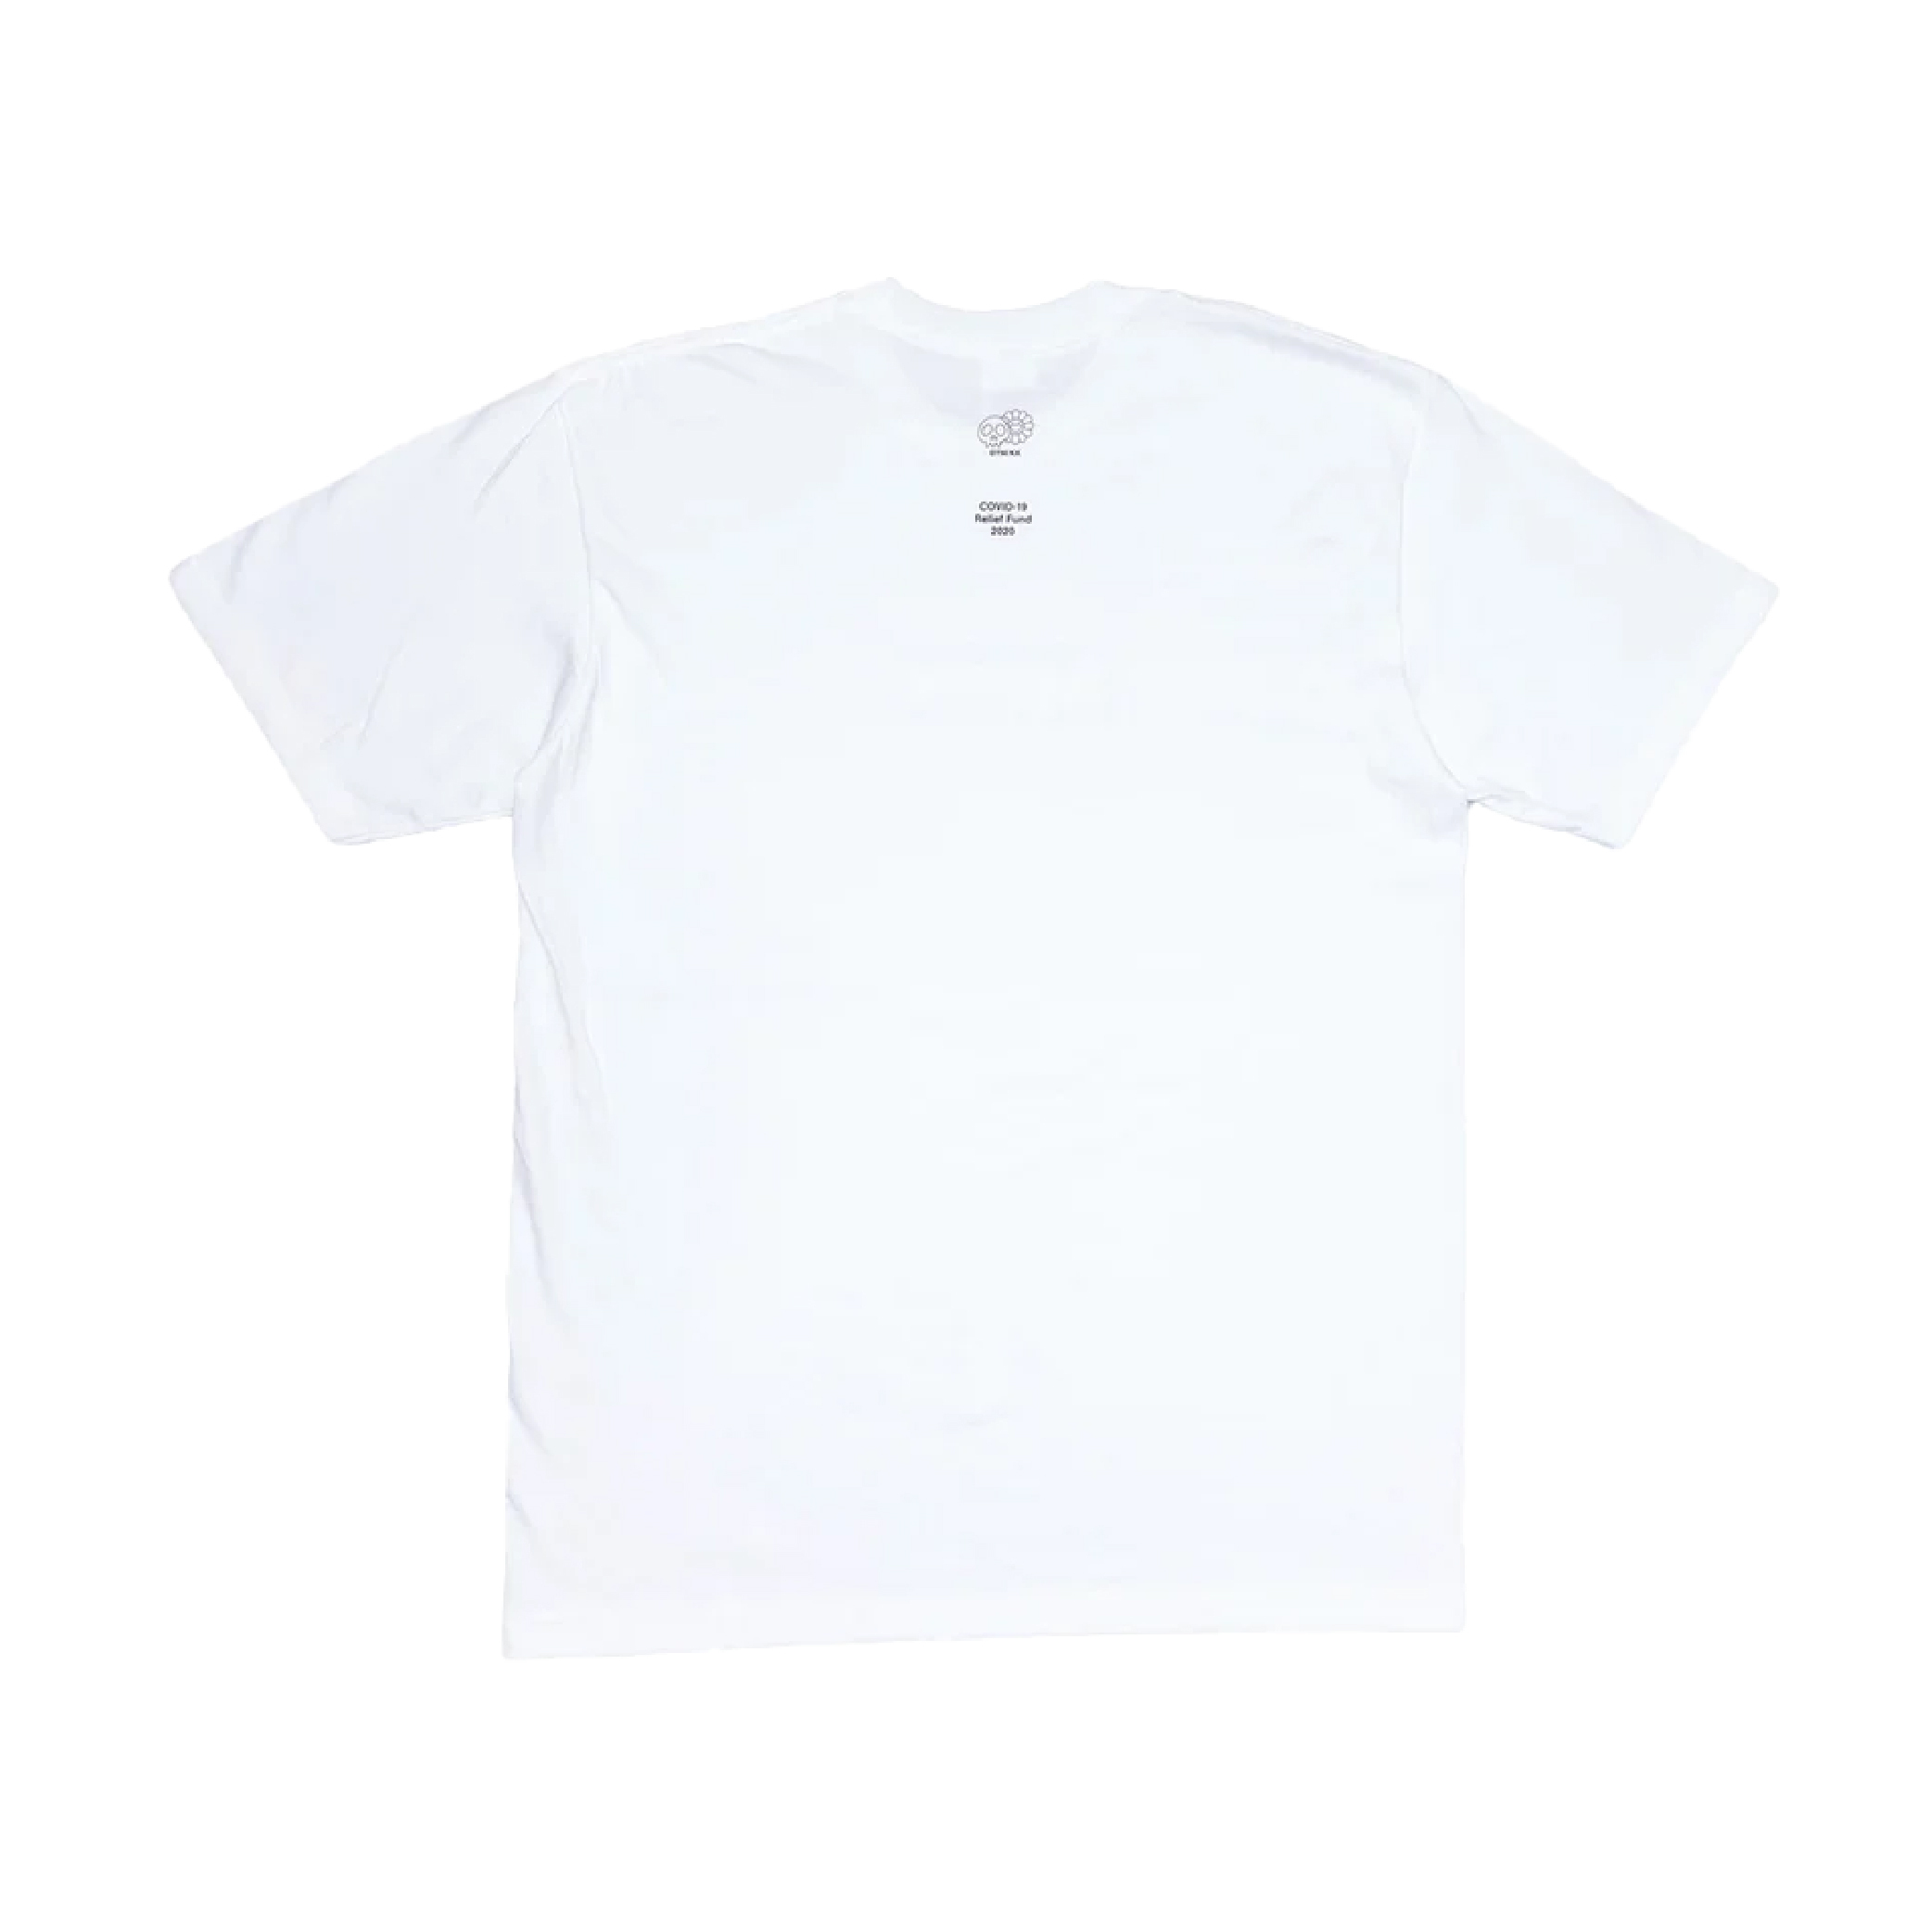 Takashi Murakami X Supreme Covid-19 T-Shirt (White)-03